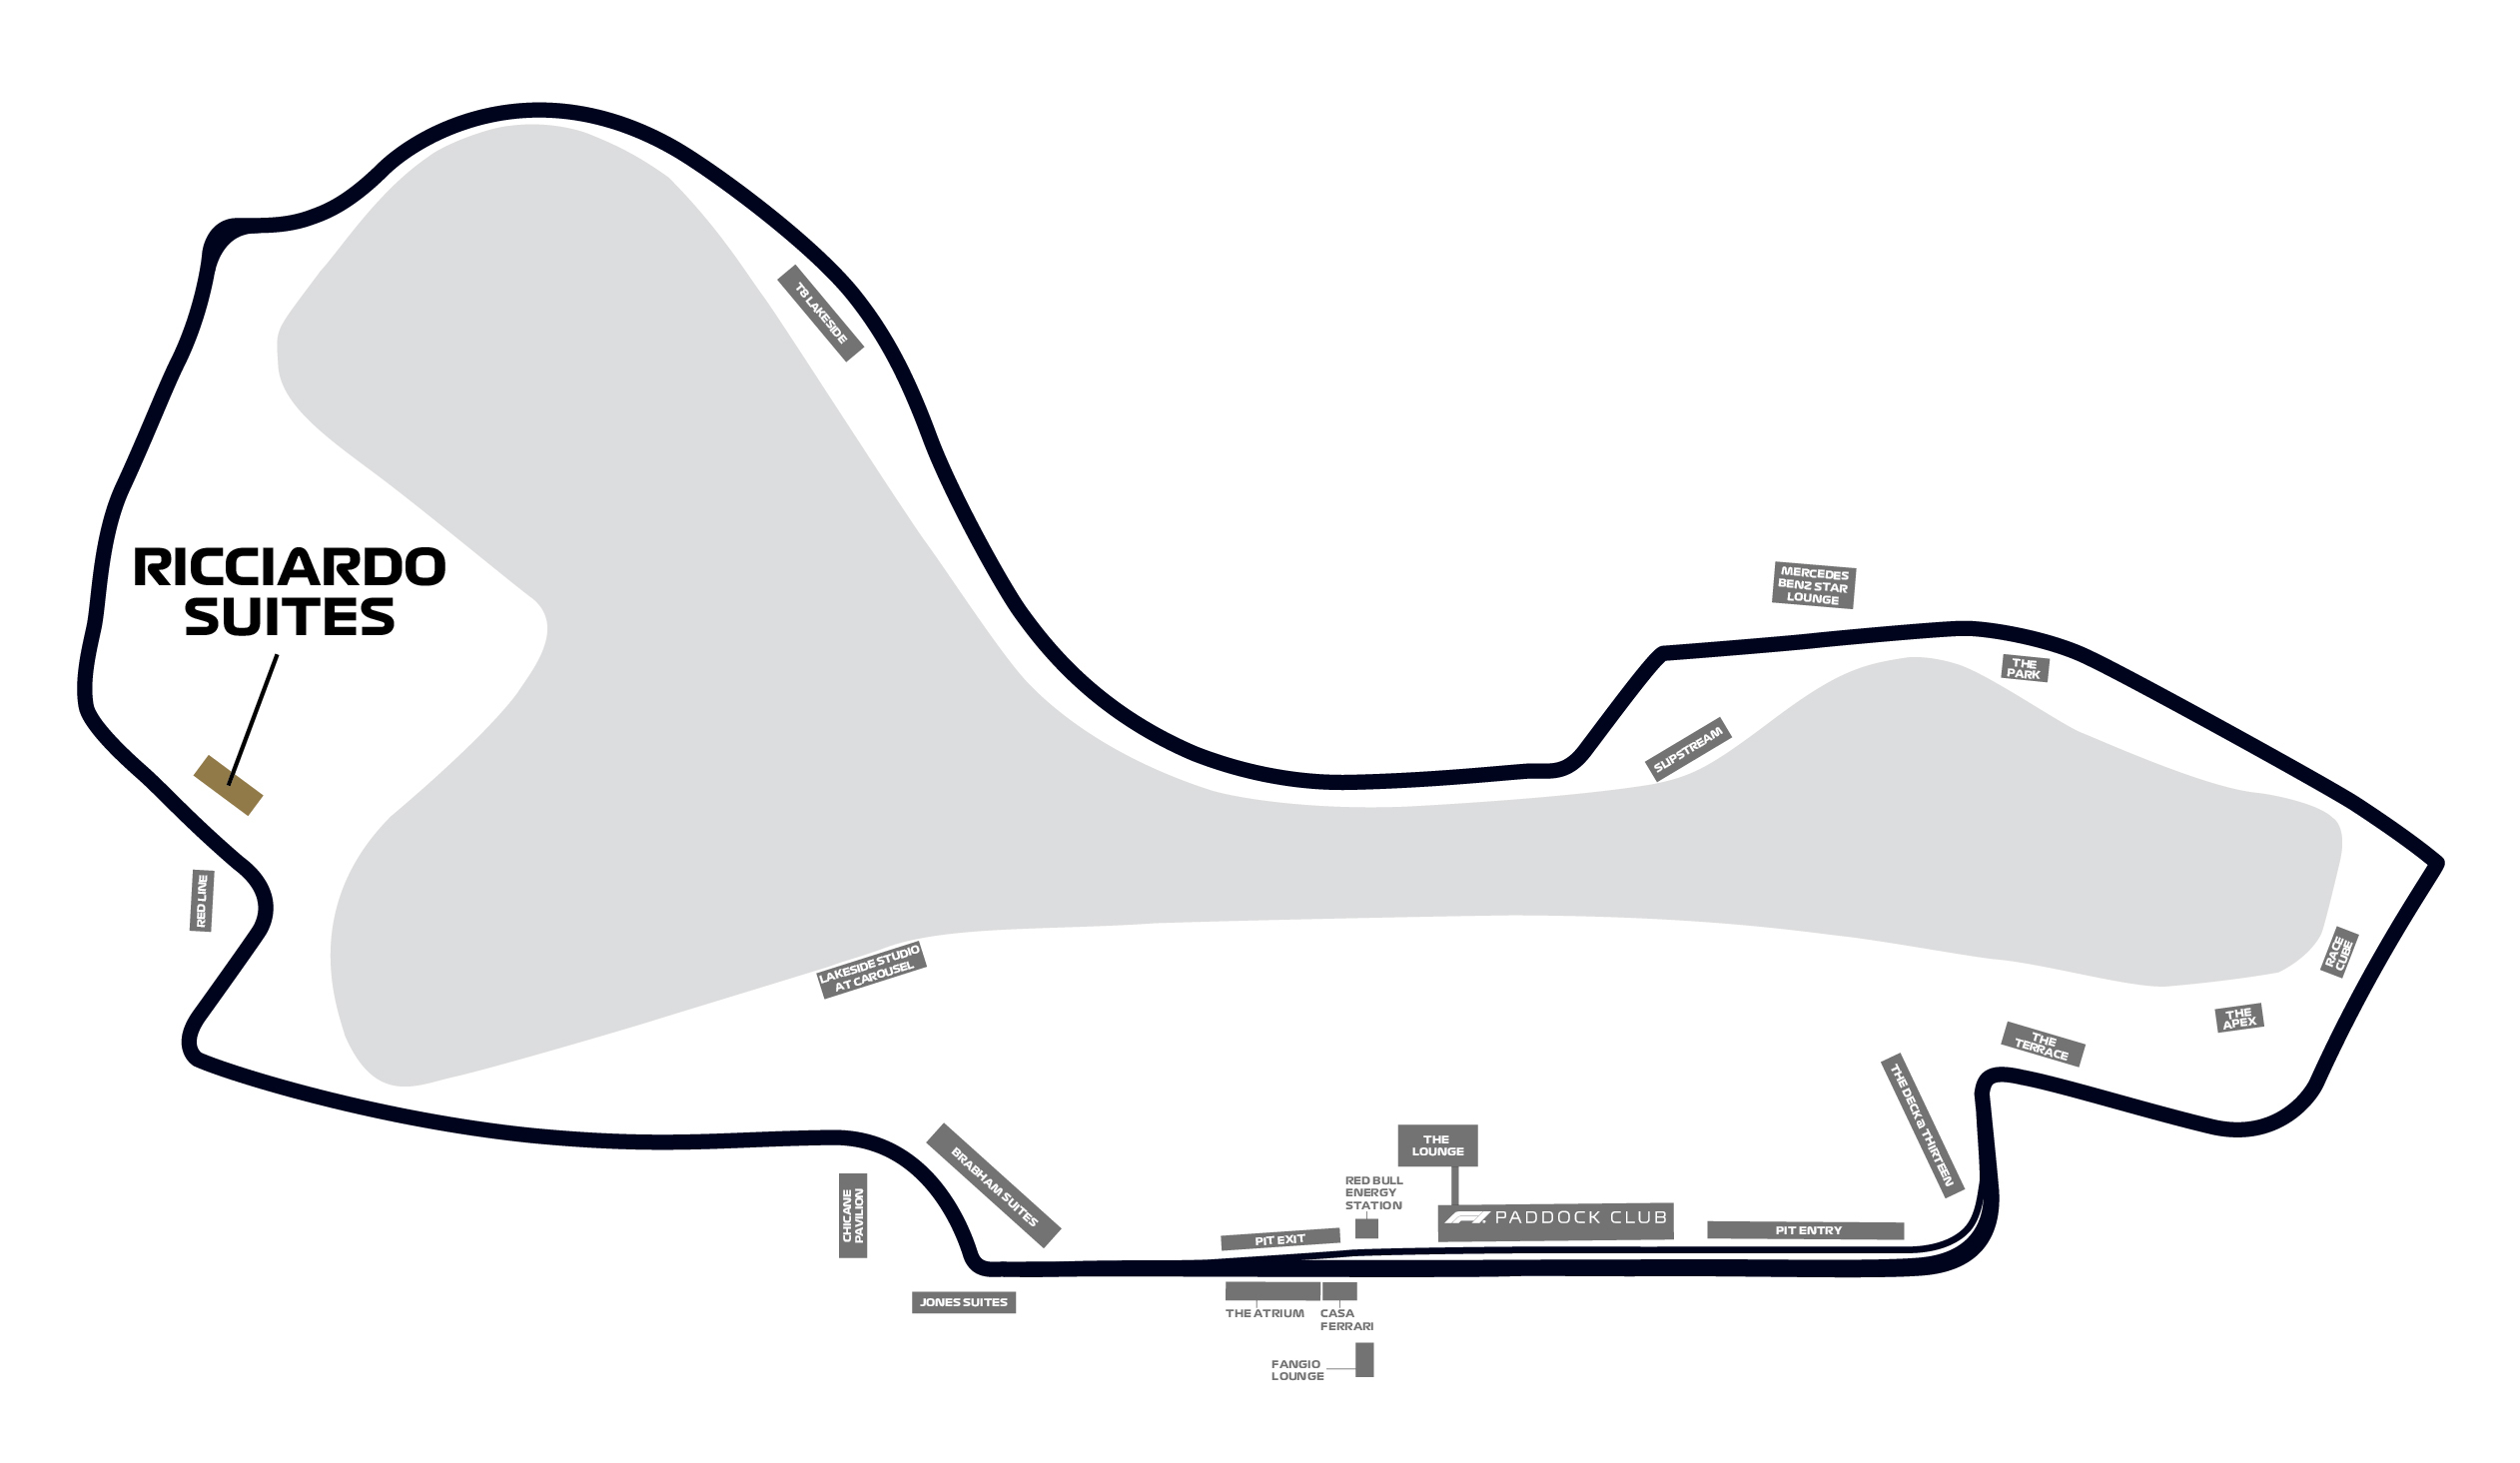 Map of Ricciardo Suites